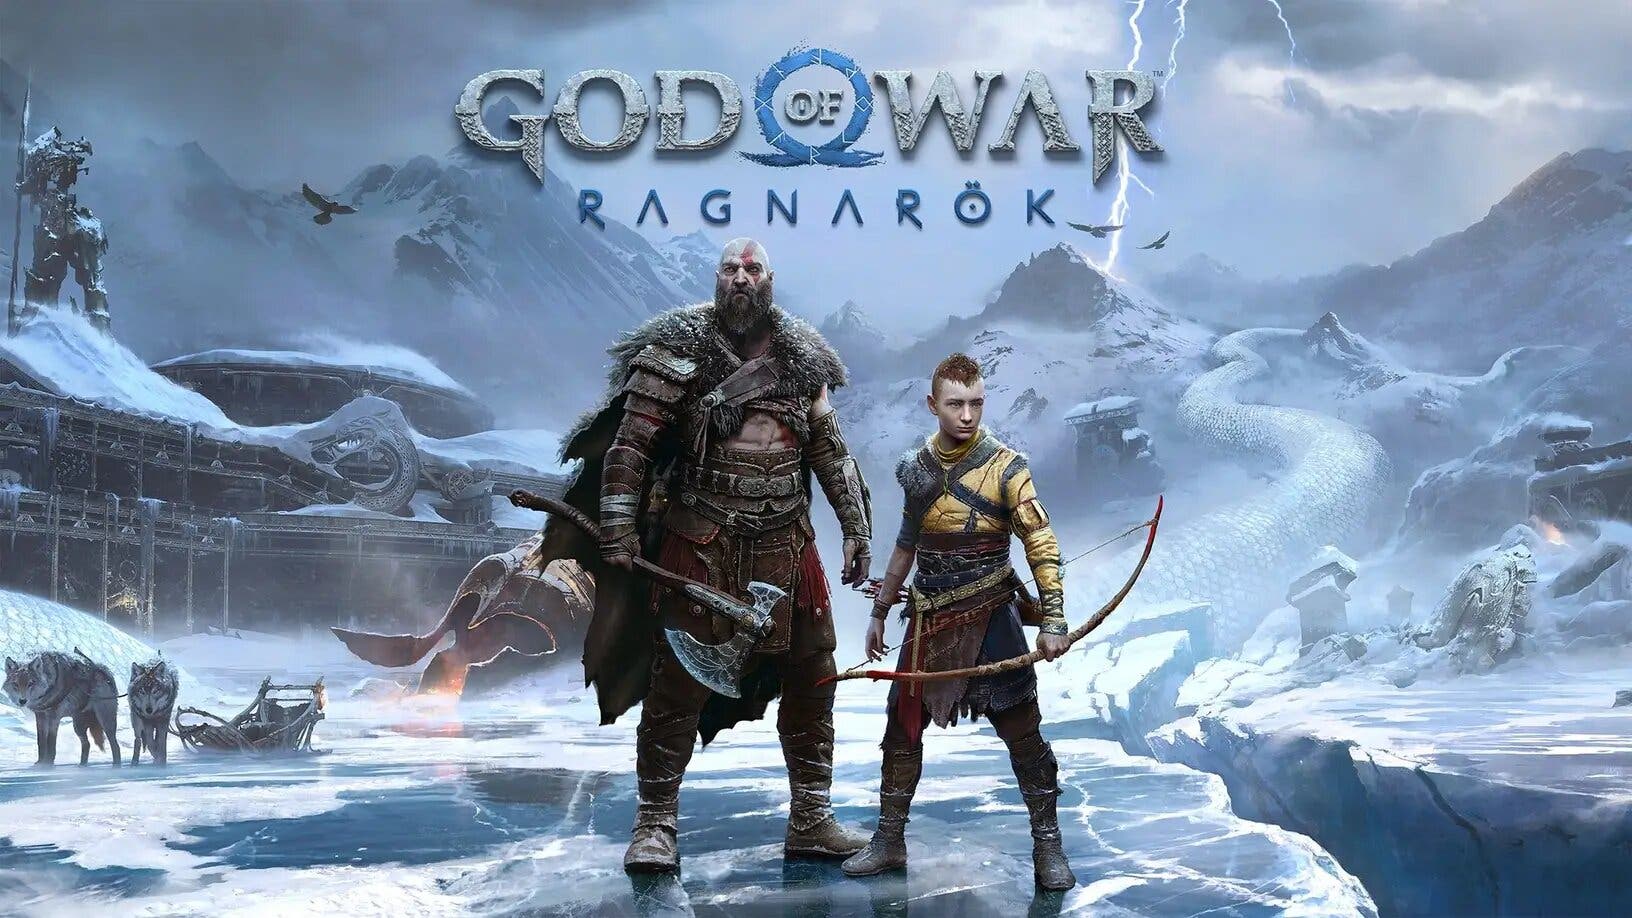 Trabalho inspirado na estética da tatuagem do personagem do jogo de vídeo  game God of War: Ragnarök, ressignificado com detalhes históricos e, By Duggan Tattoo